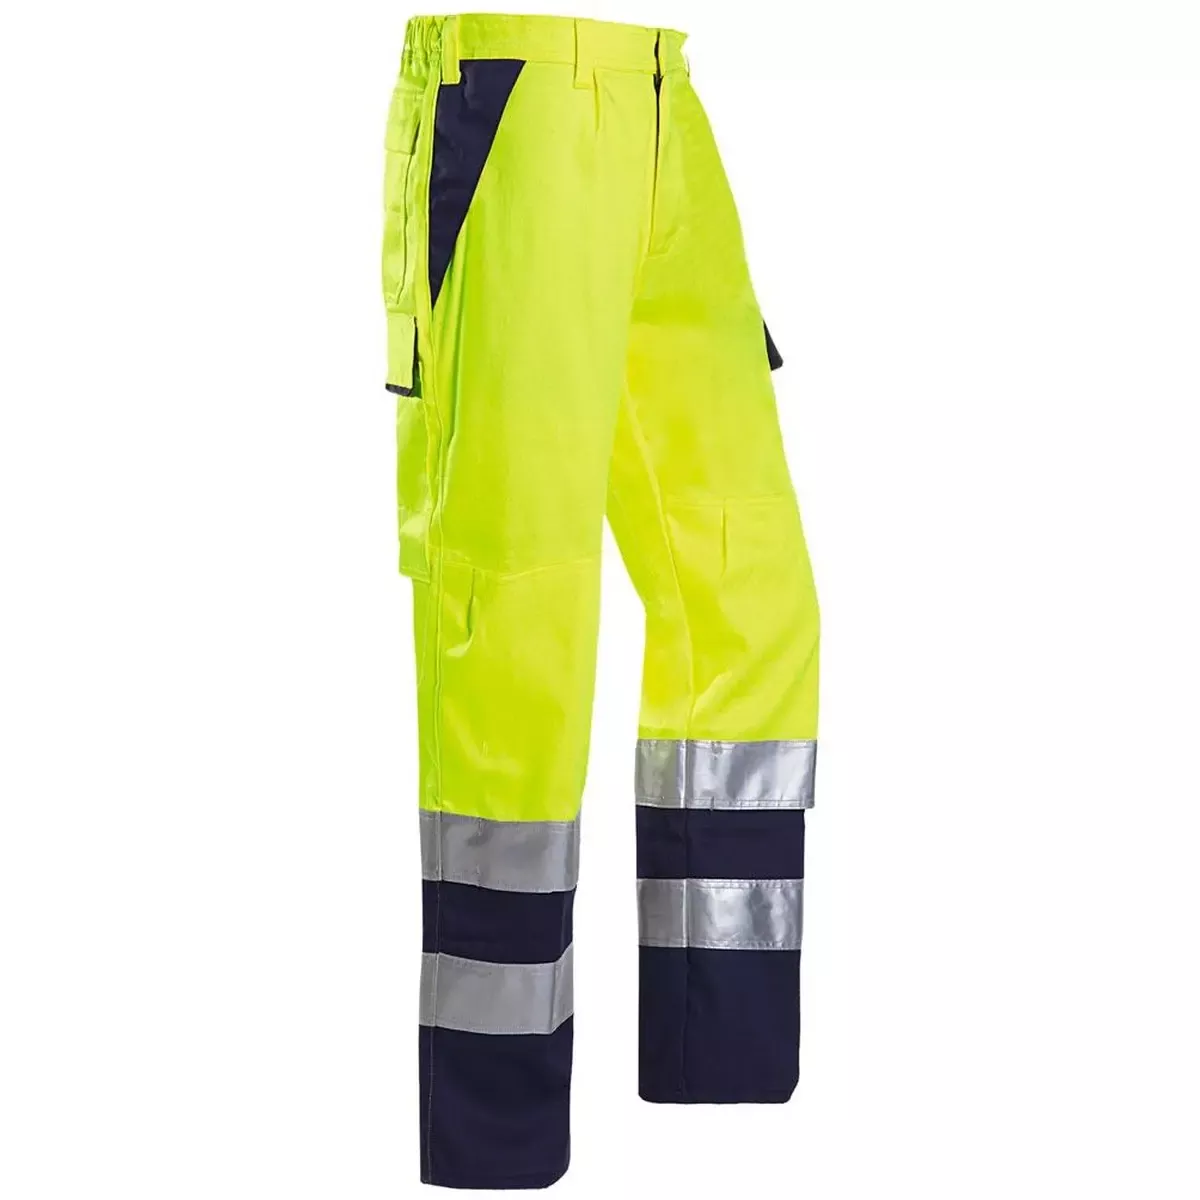 Warnschutz-Bundhose m. Störlich. Royan, Farbe leuchtgelb/marine, Gr. R50